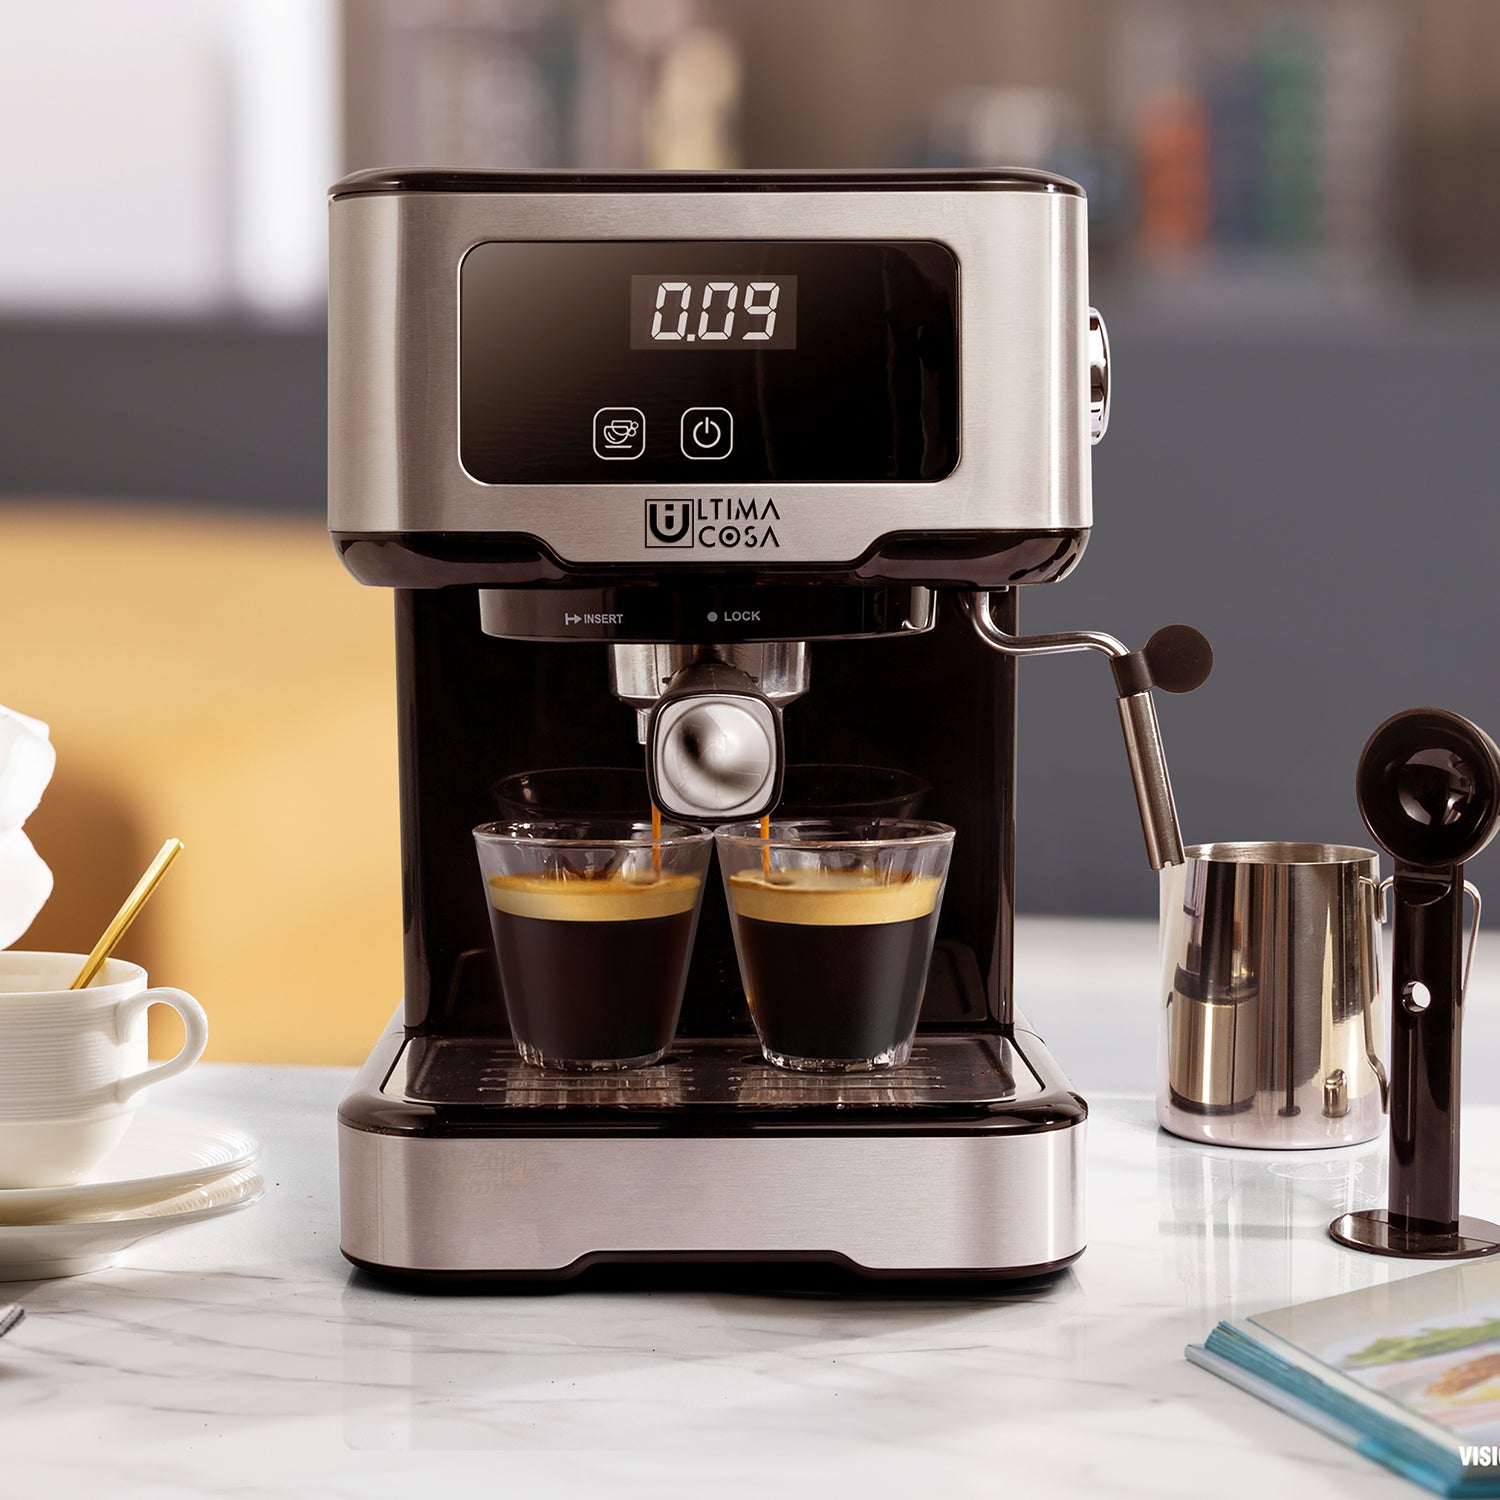 Ultima Cosa Coffee Machine Presto Bollente Quindici Espresso Machine